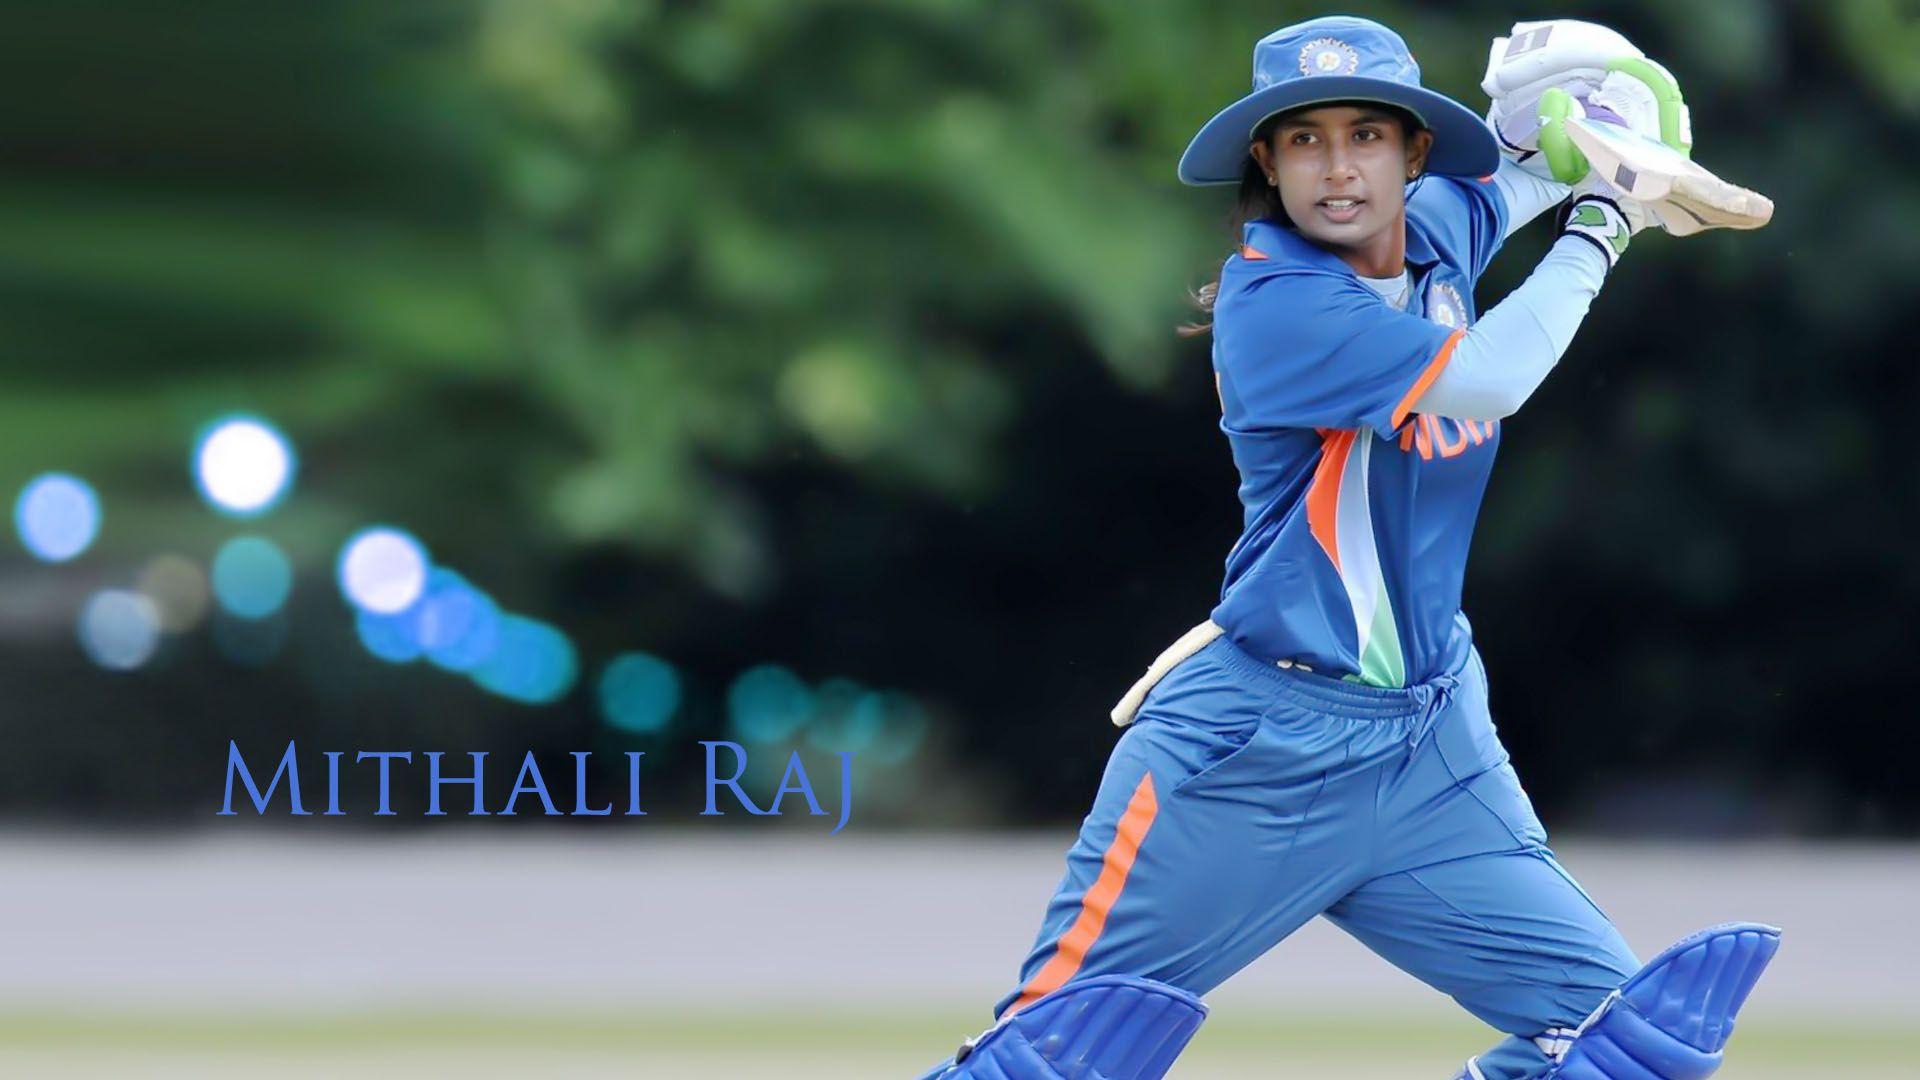 Mithali Raj Female Cricketer HD Wallpaper. Mithali